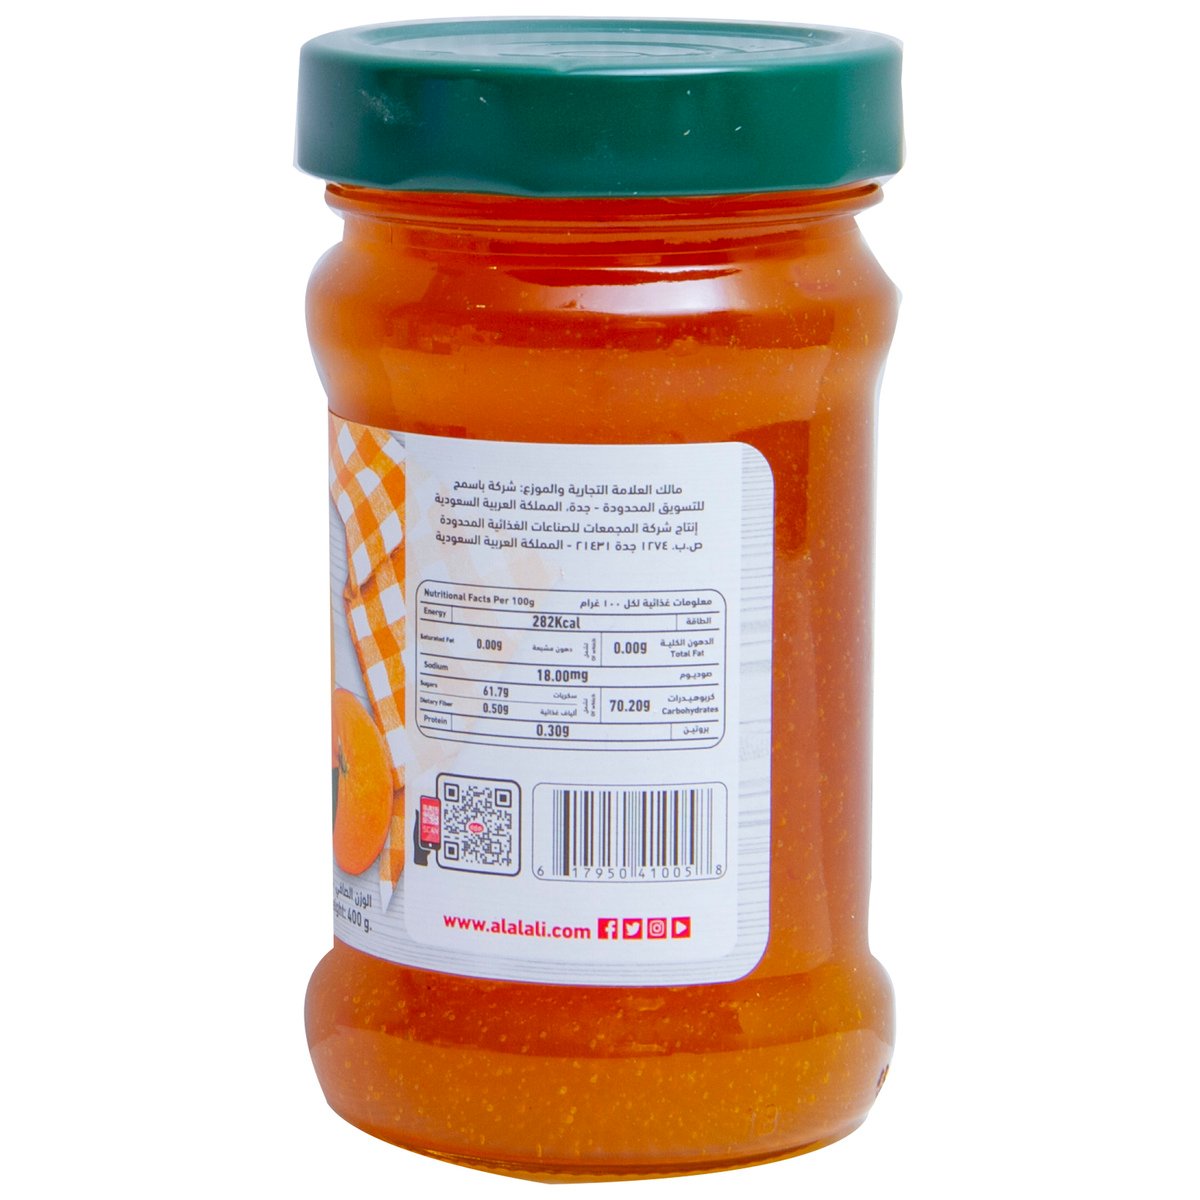 Al Alali Jam Orange Marmalade 400 g